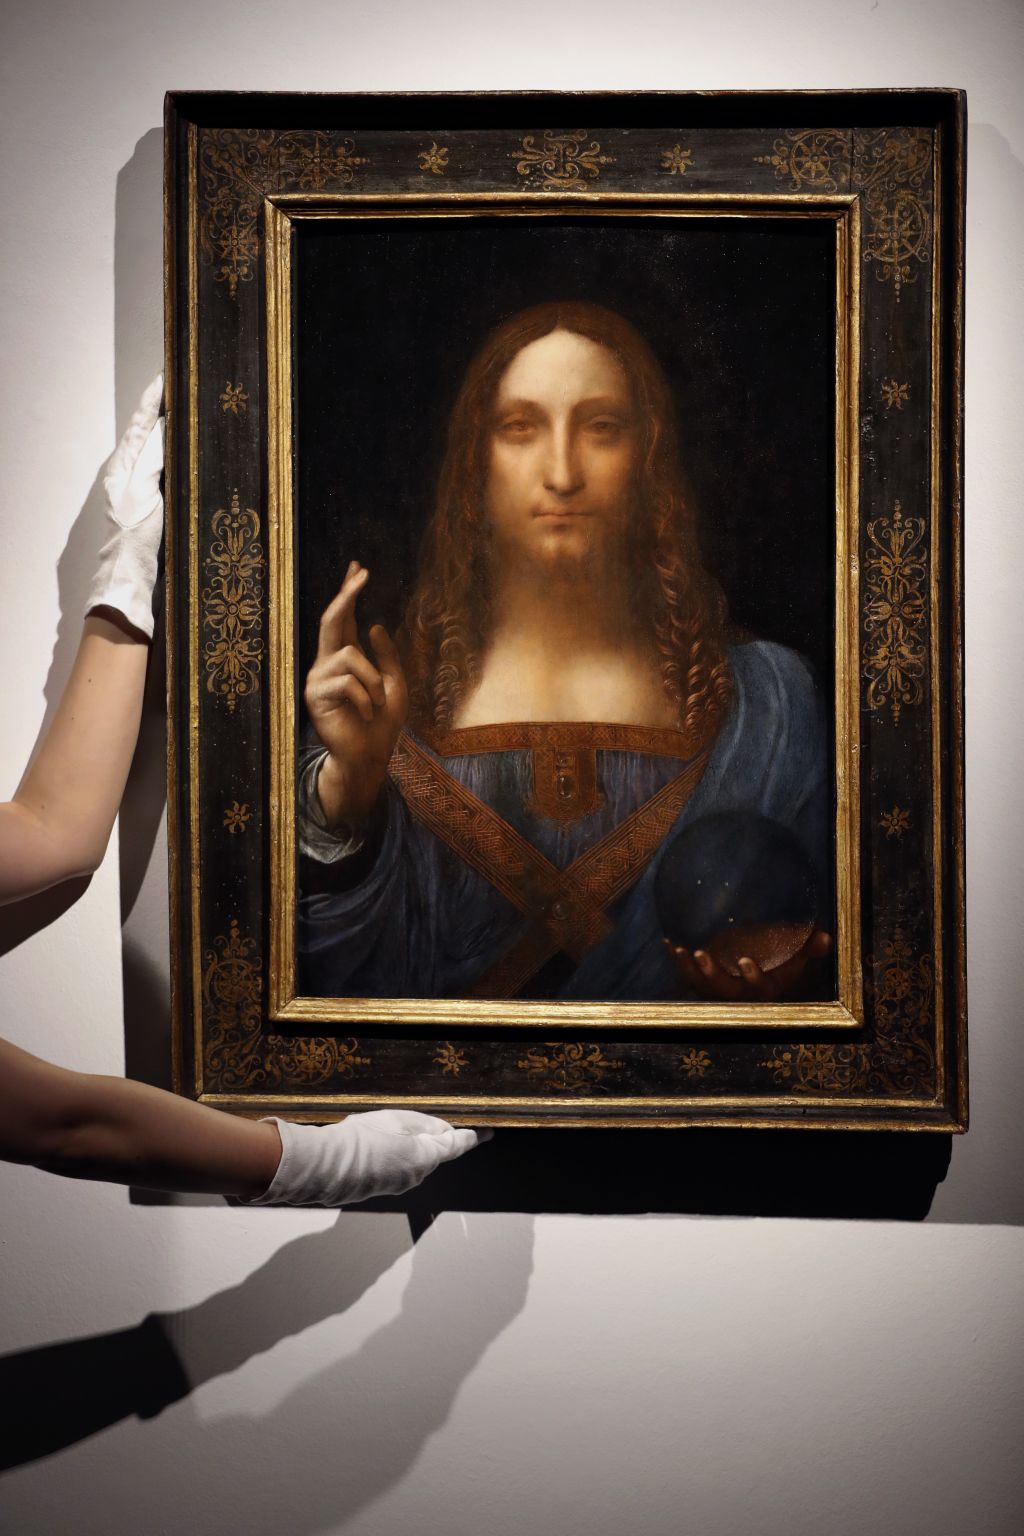 Leonardovo sliko naj bi kupil savdski princ